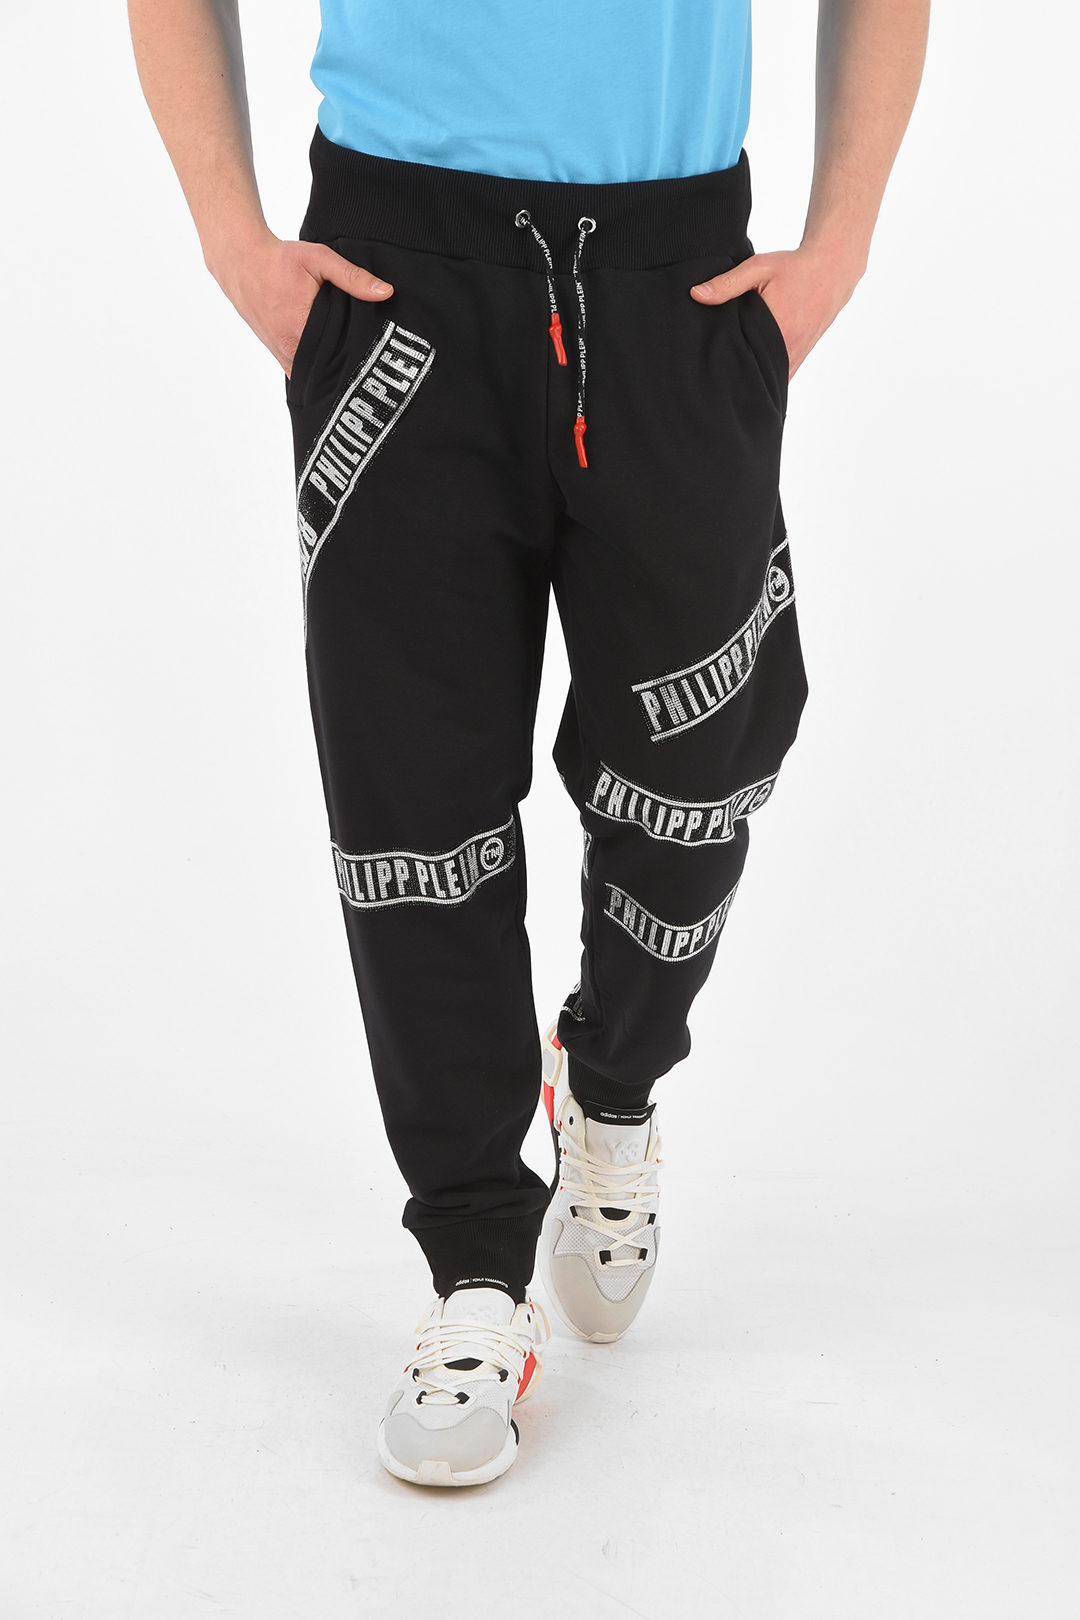 Philipp Plein HOMME rhinestone embellished jogger pants men - Glamood Outlet